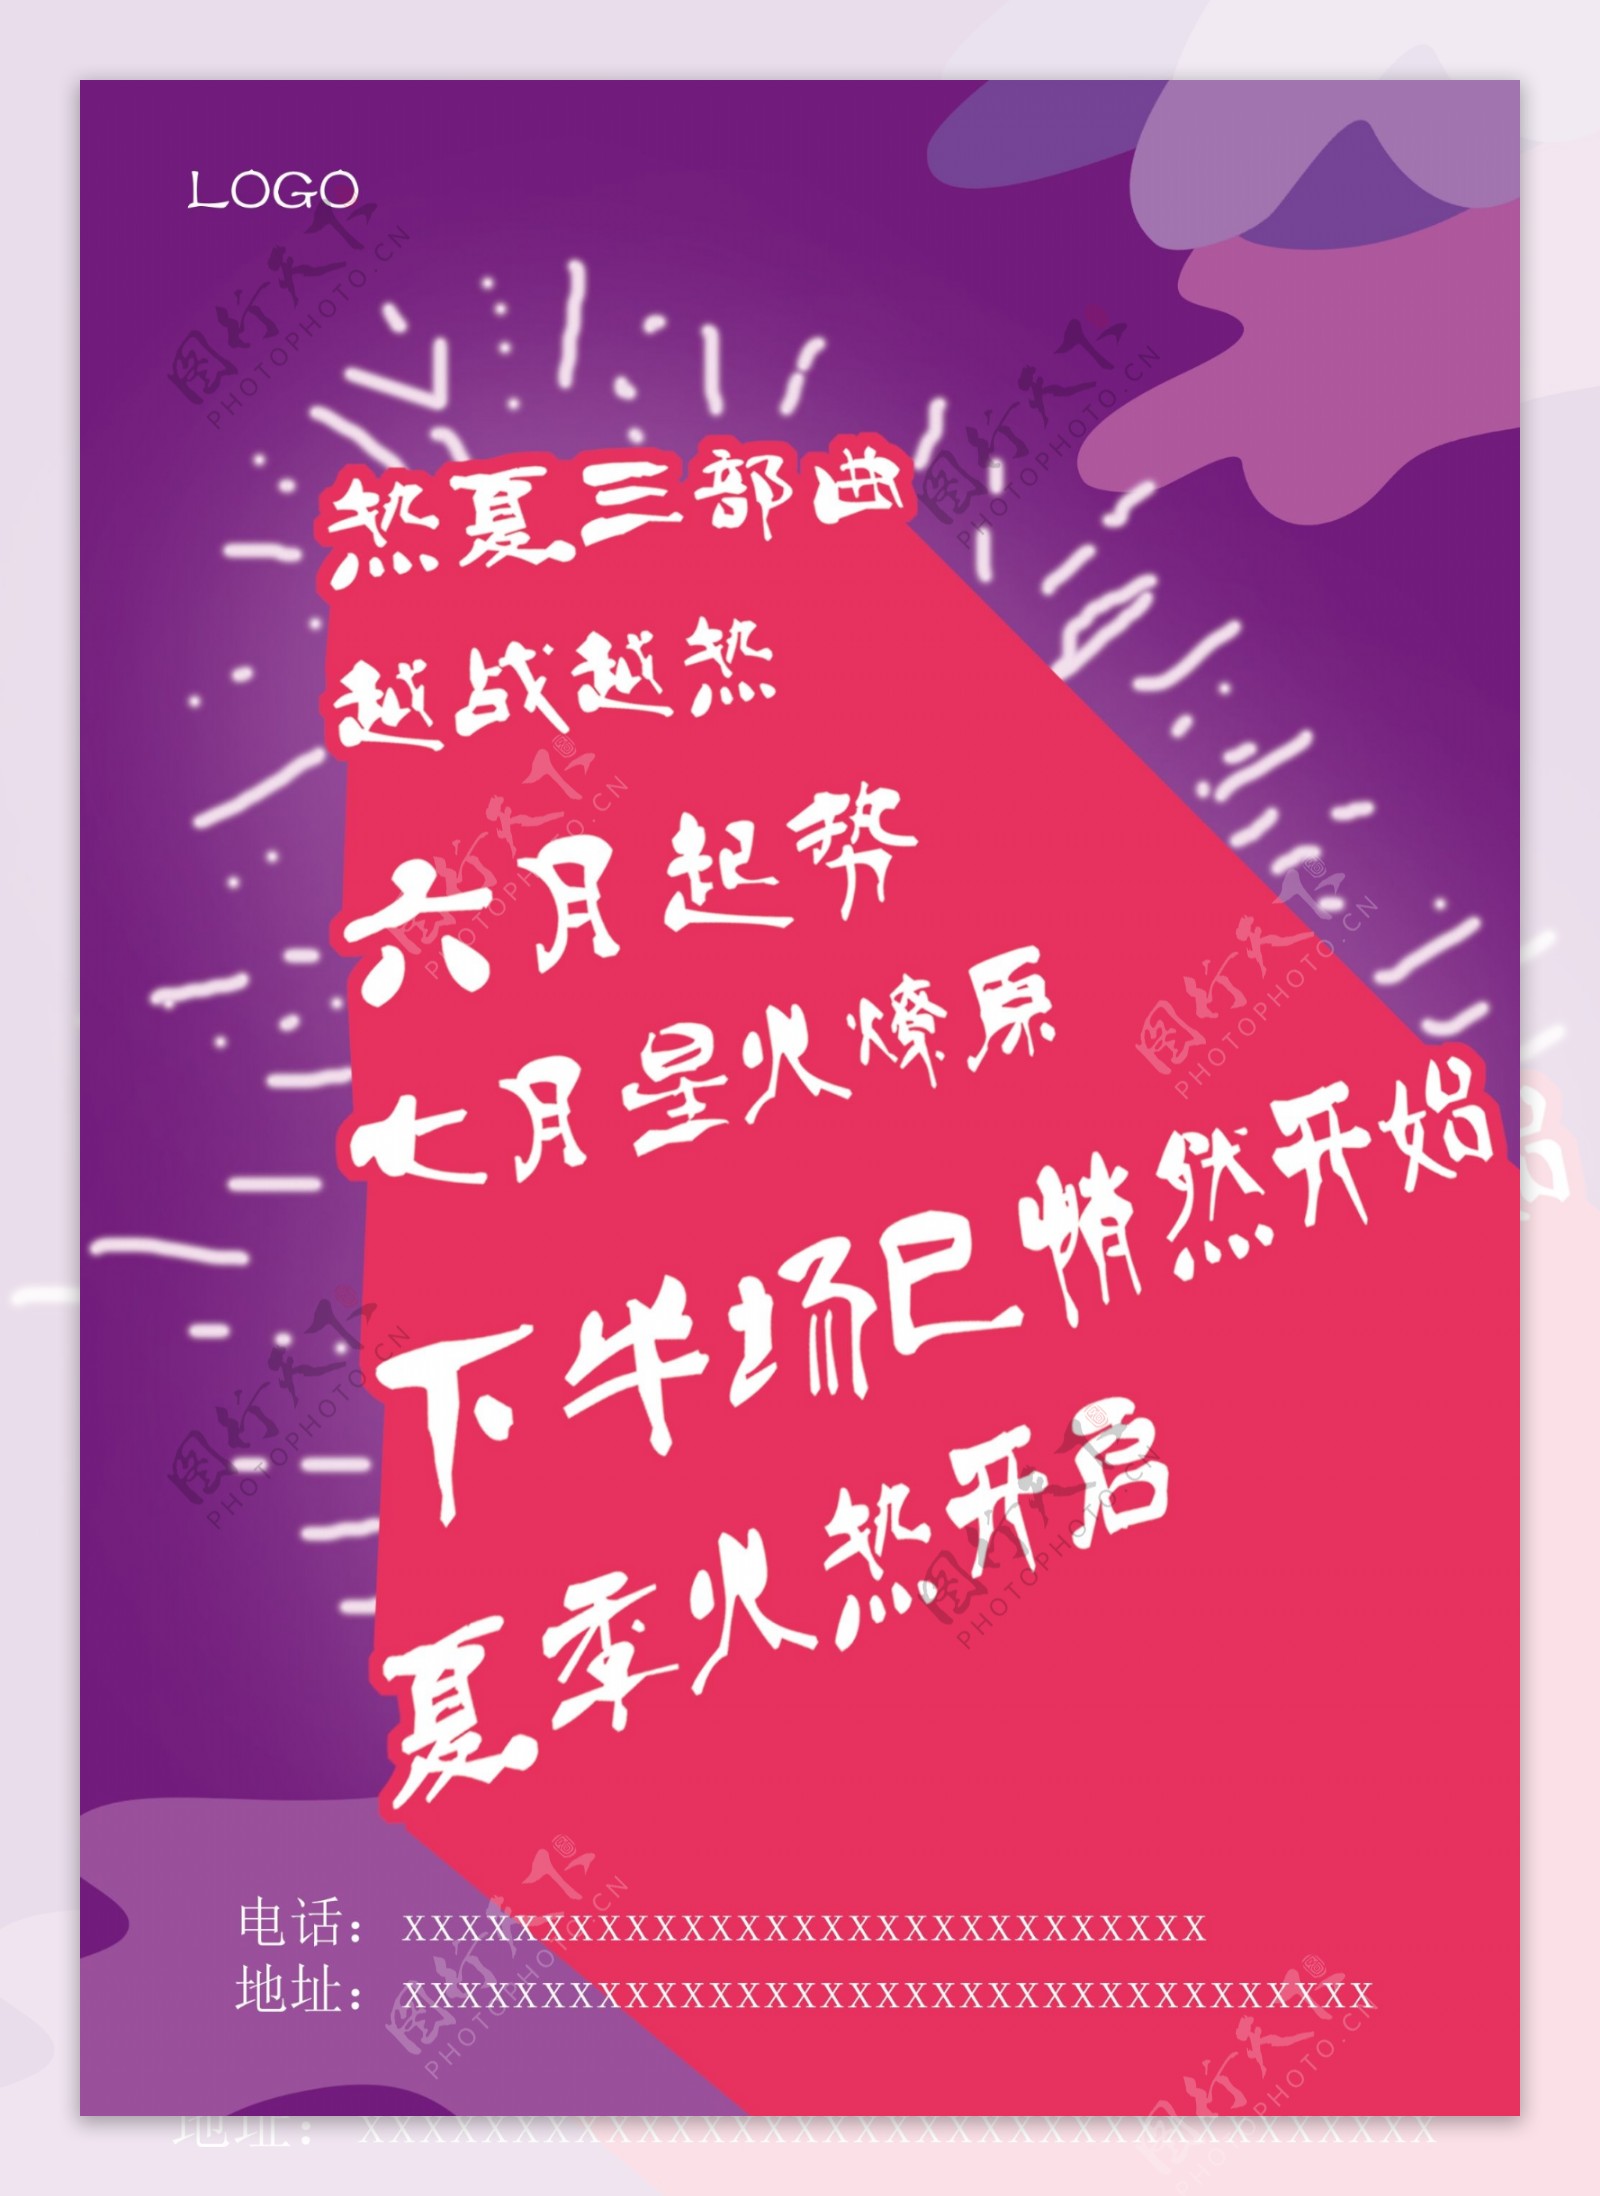 紫色炫酷宣传海报